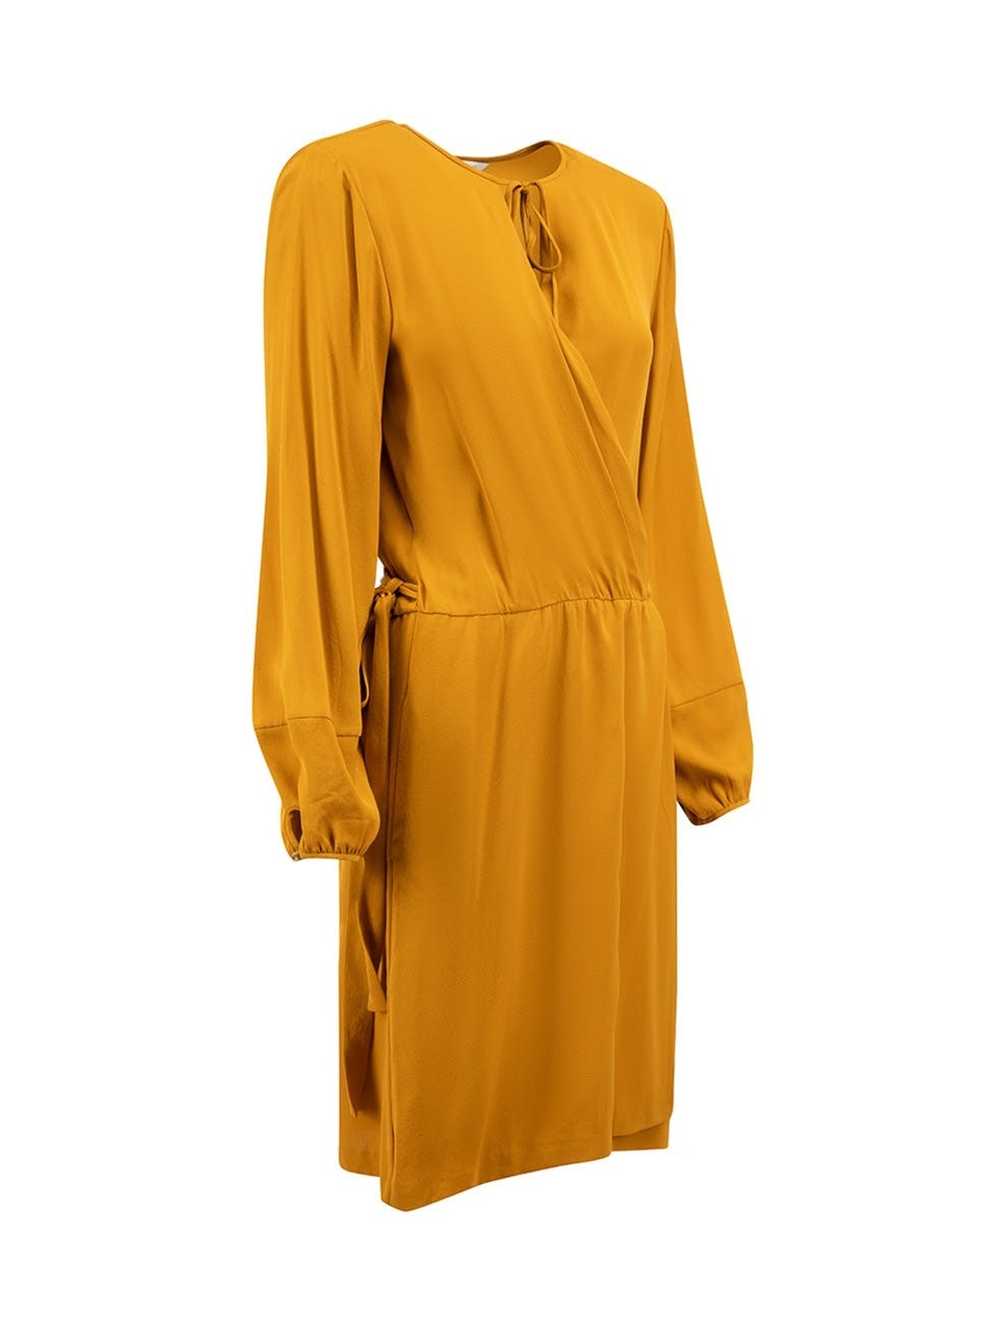 Diane von Furstenberg Camel Round Neck Wrap Dress - image 2